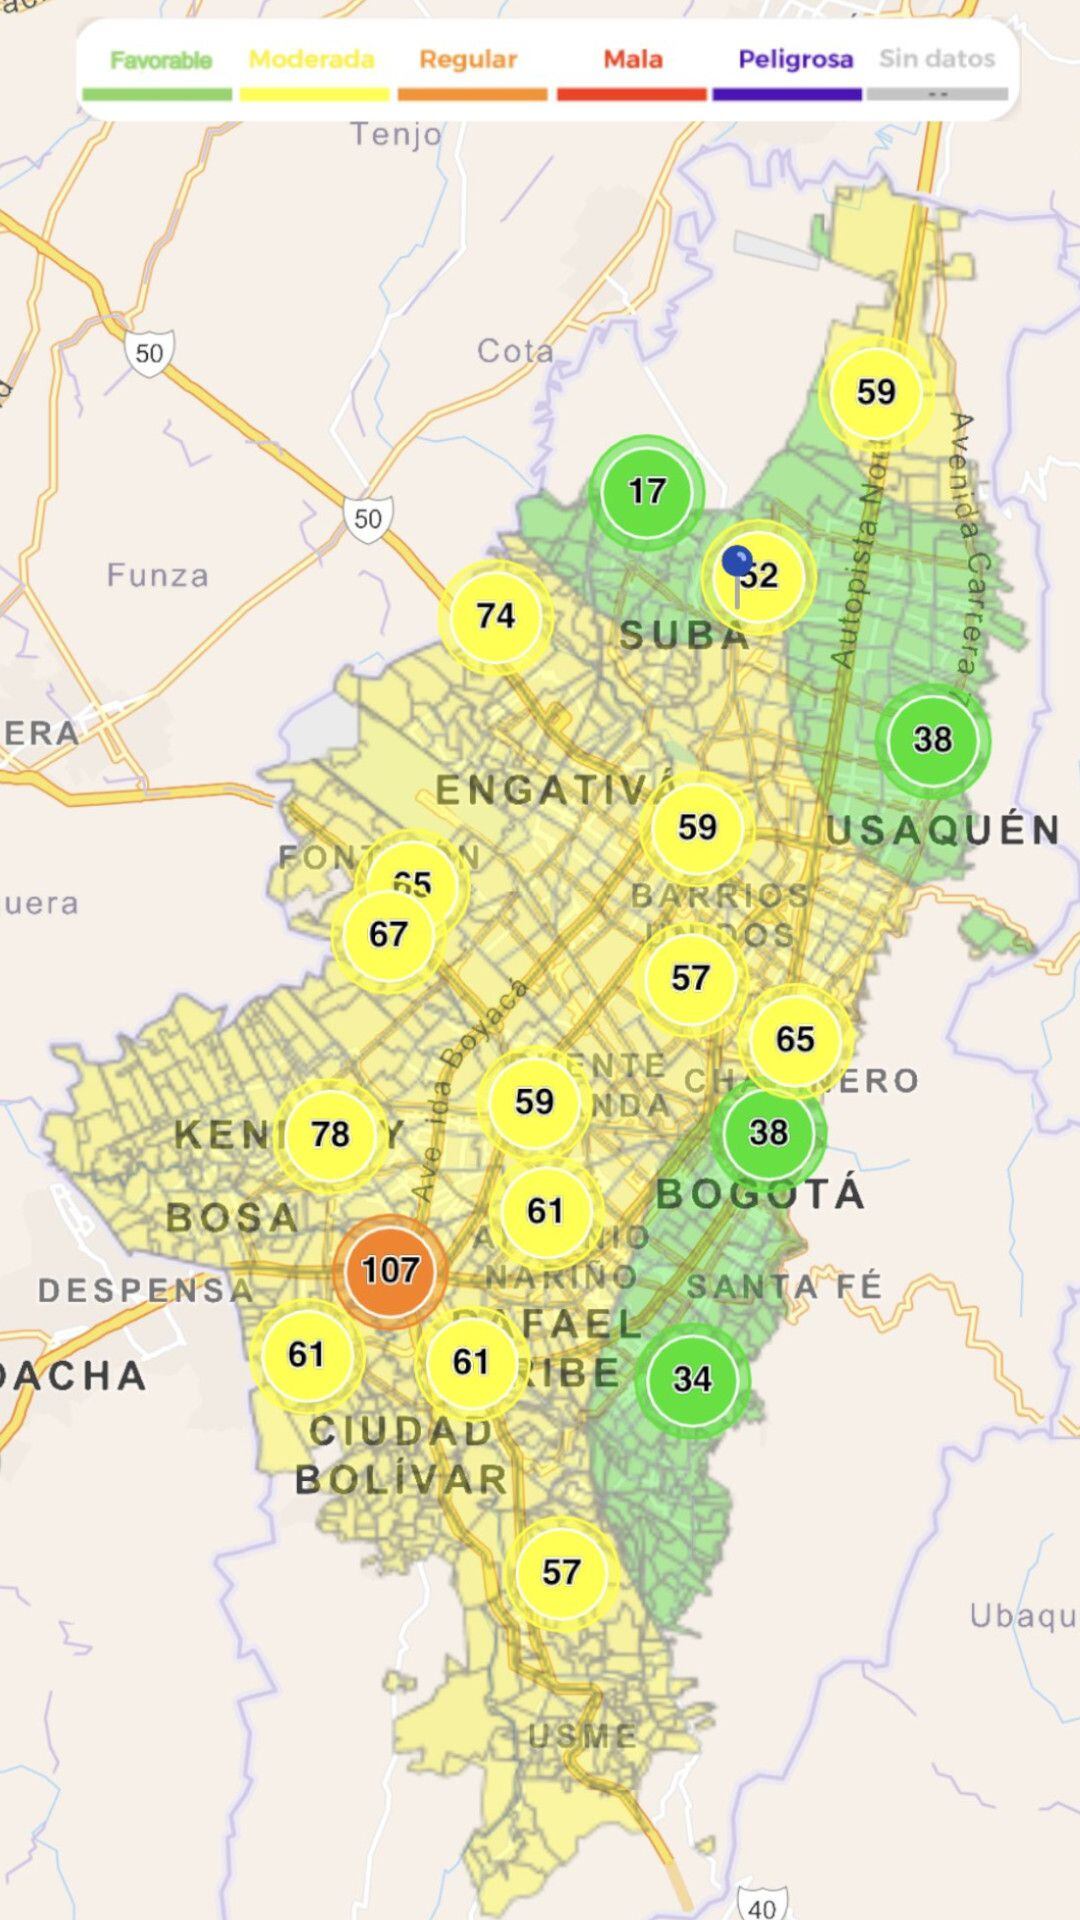 Mediciones de la calidad del aire en Bogotá por localidades. Imagen: Gráfico que elaboraron en la Secretaría de Seguridad